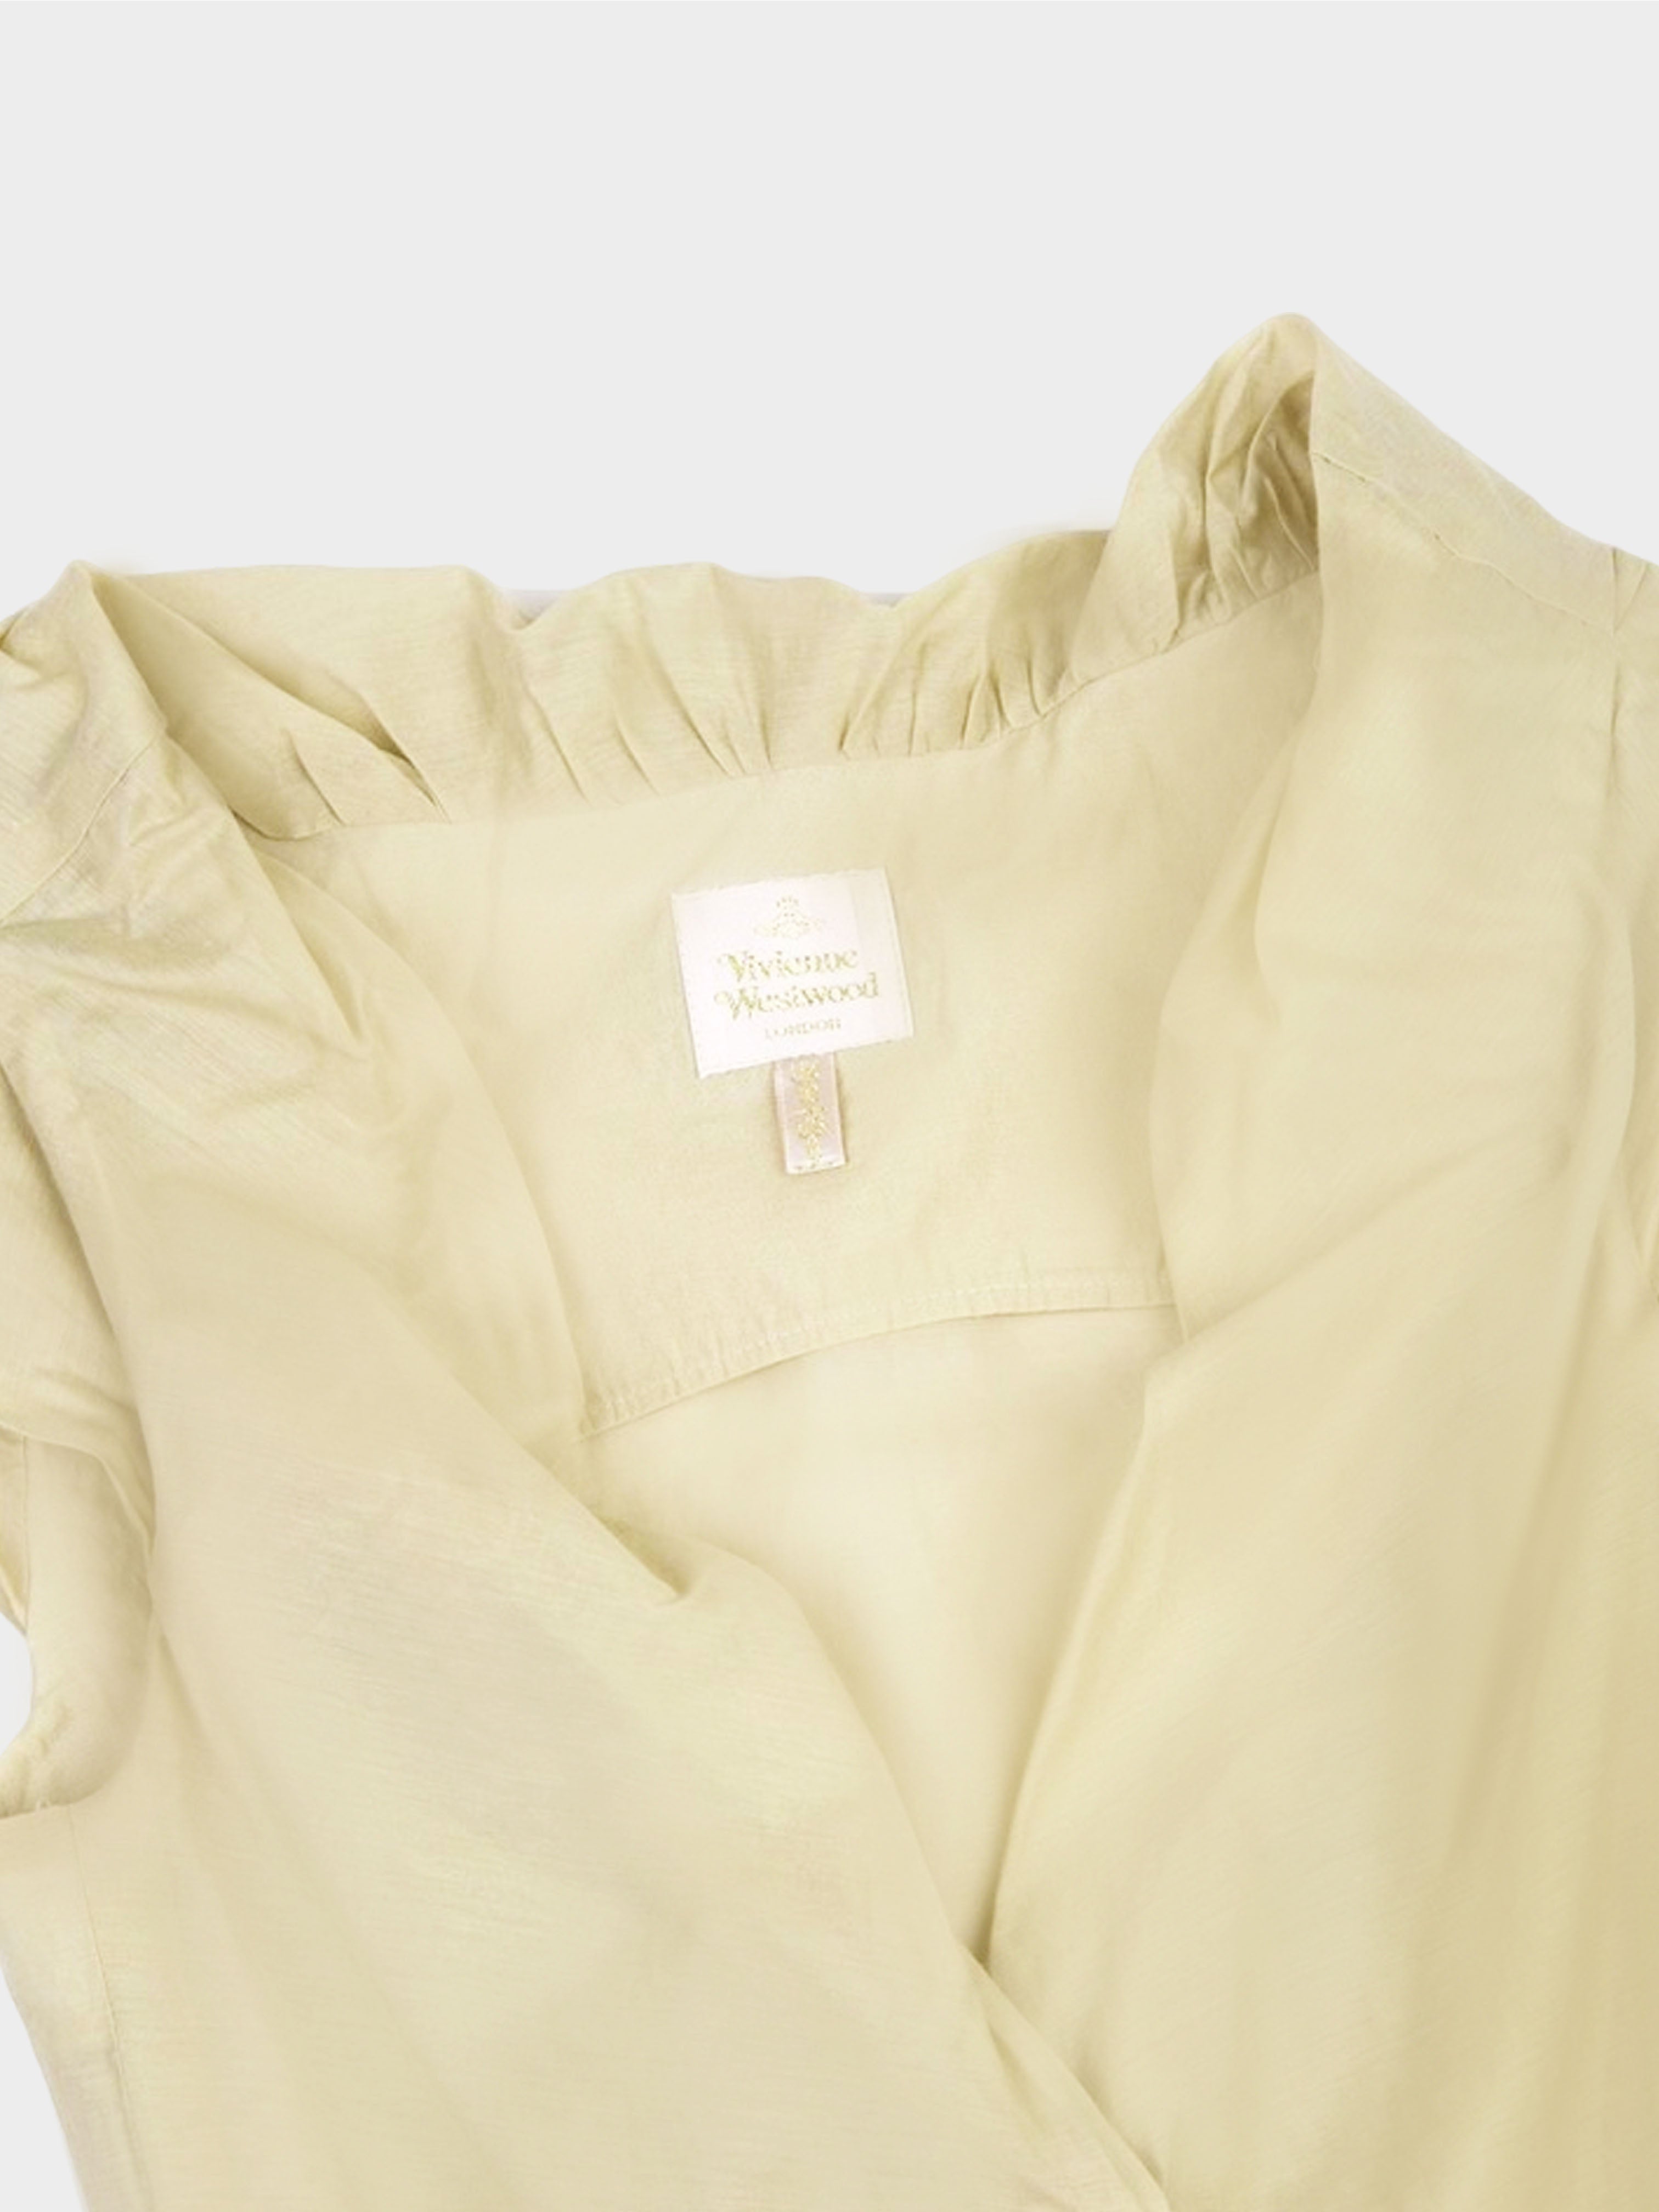 Vivienne Westwood 2000s Beige Shirring Switching Vest